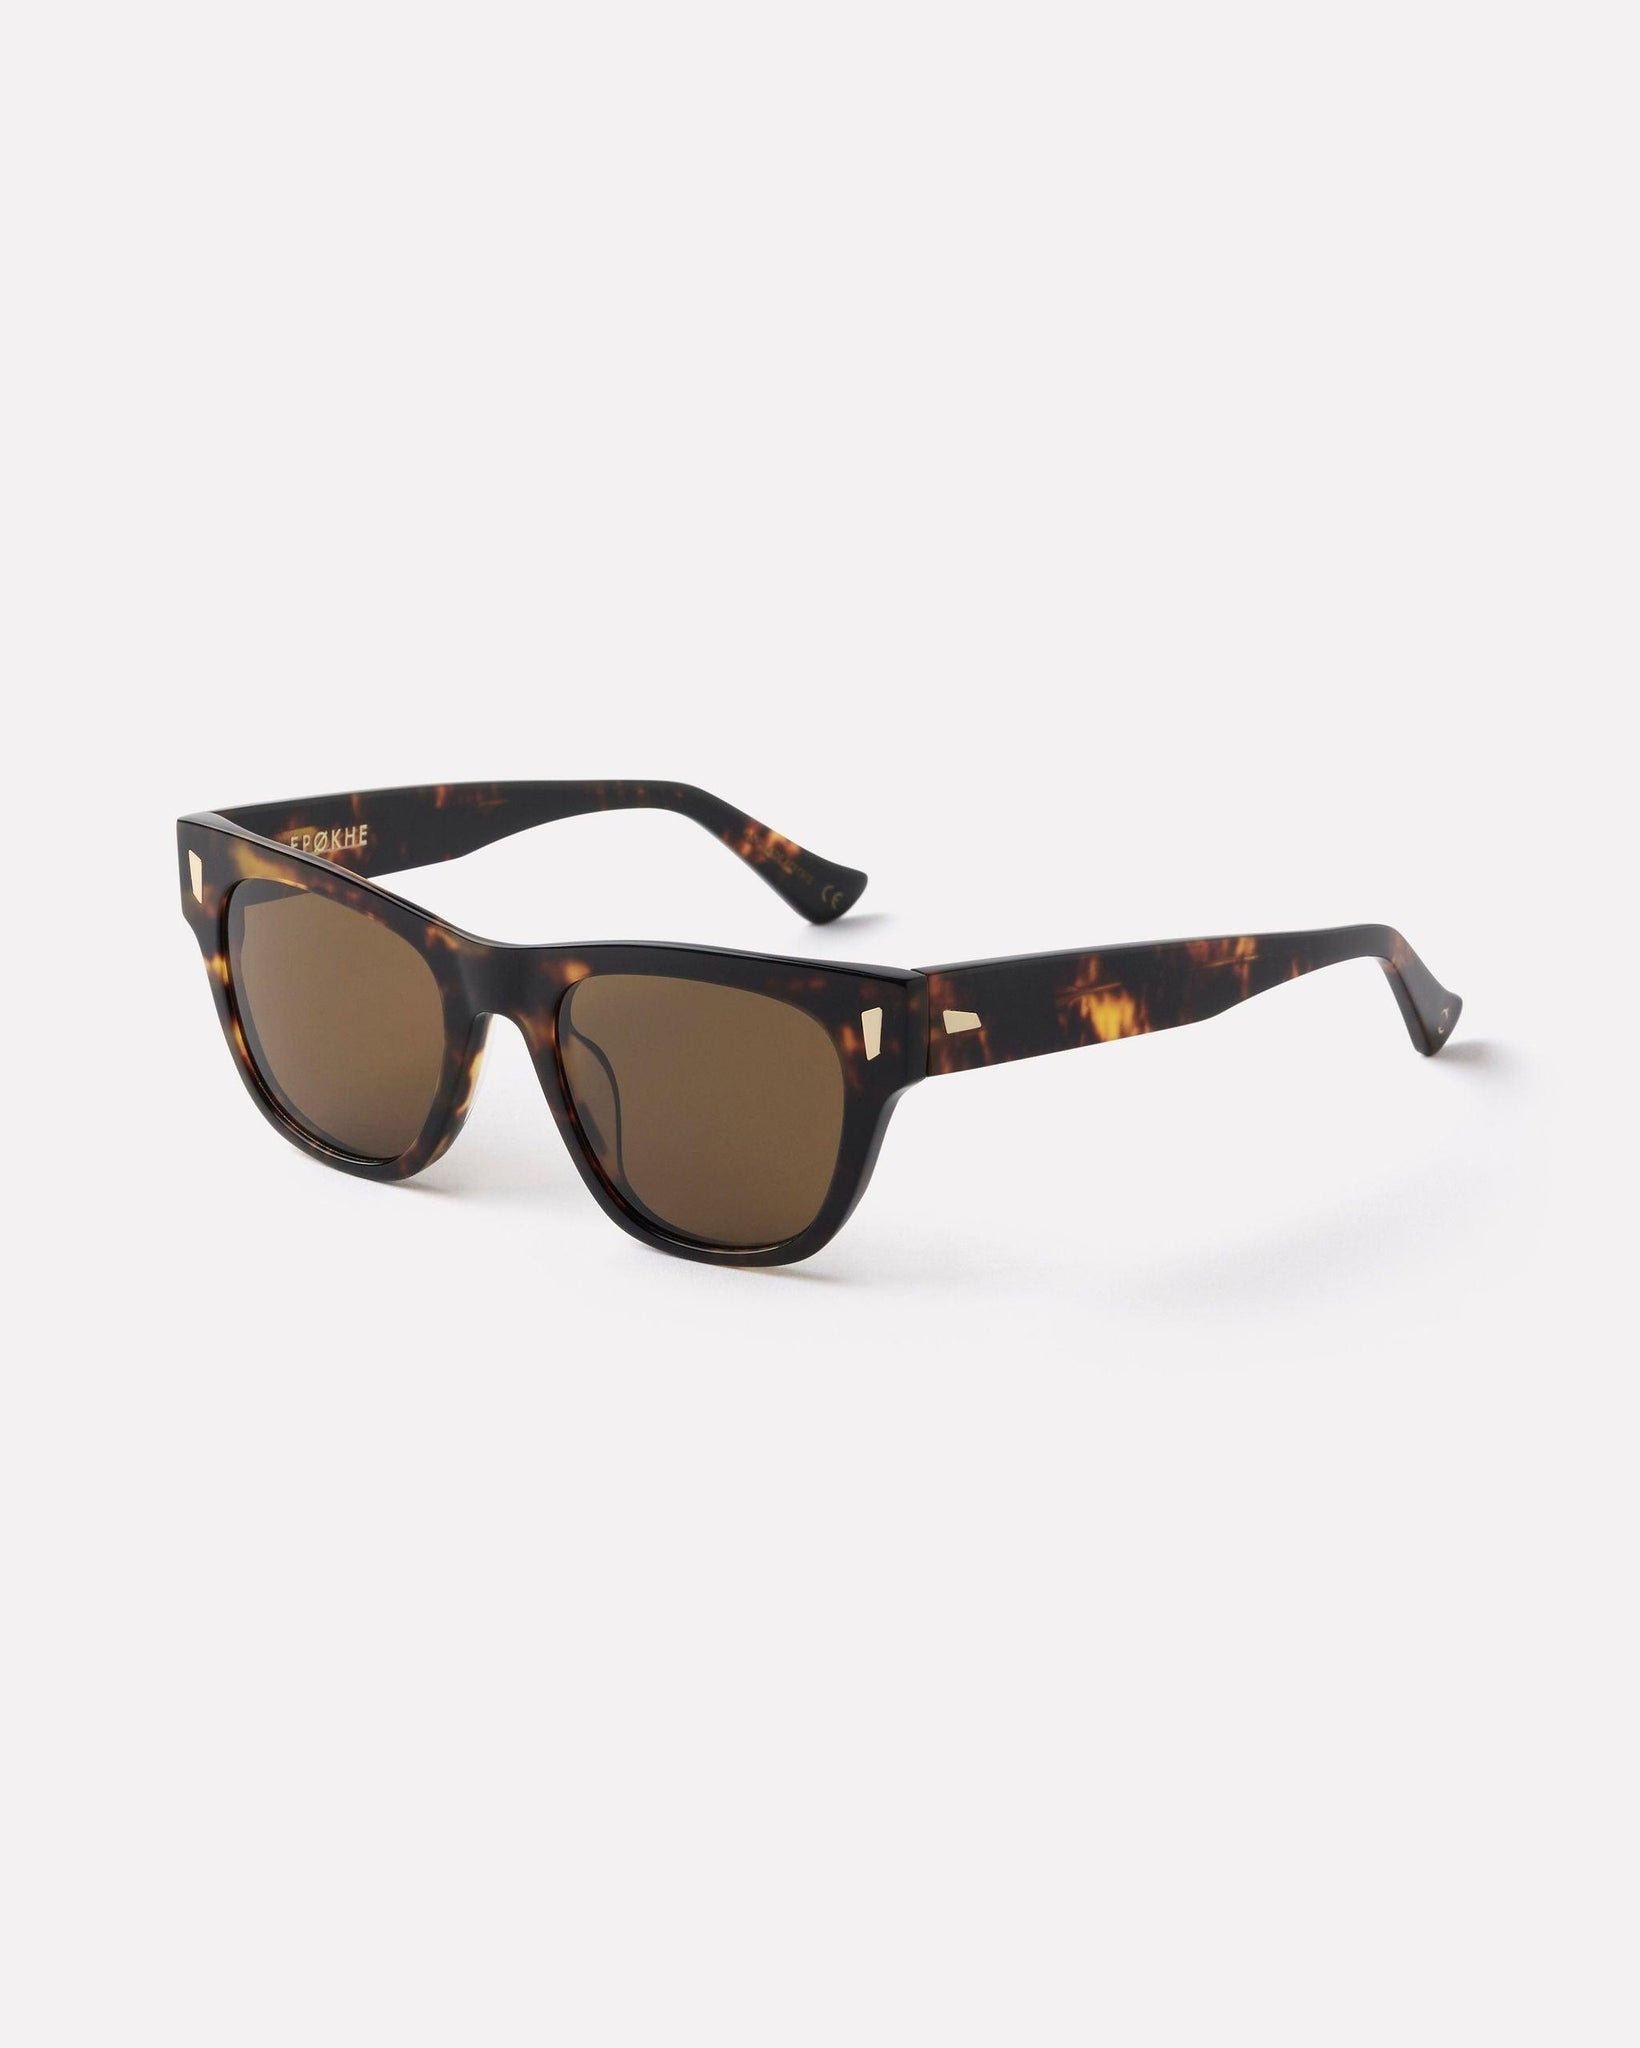 Non - Tortoise Polished / Bronze Polarized - Sunglasses - EPOKHE EYEWEAR